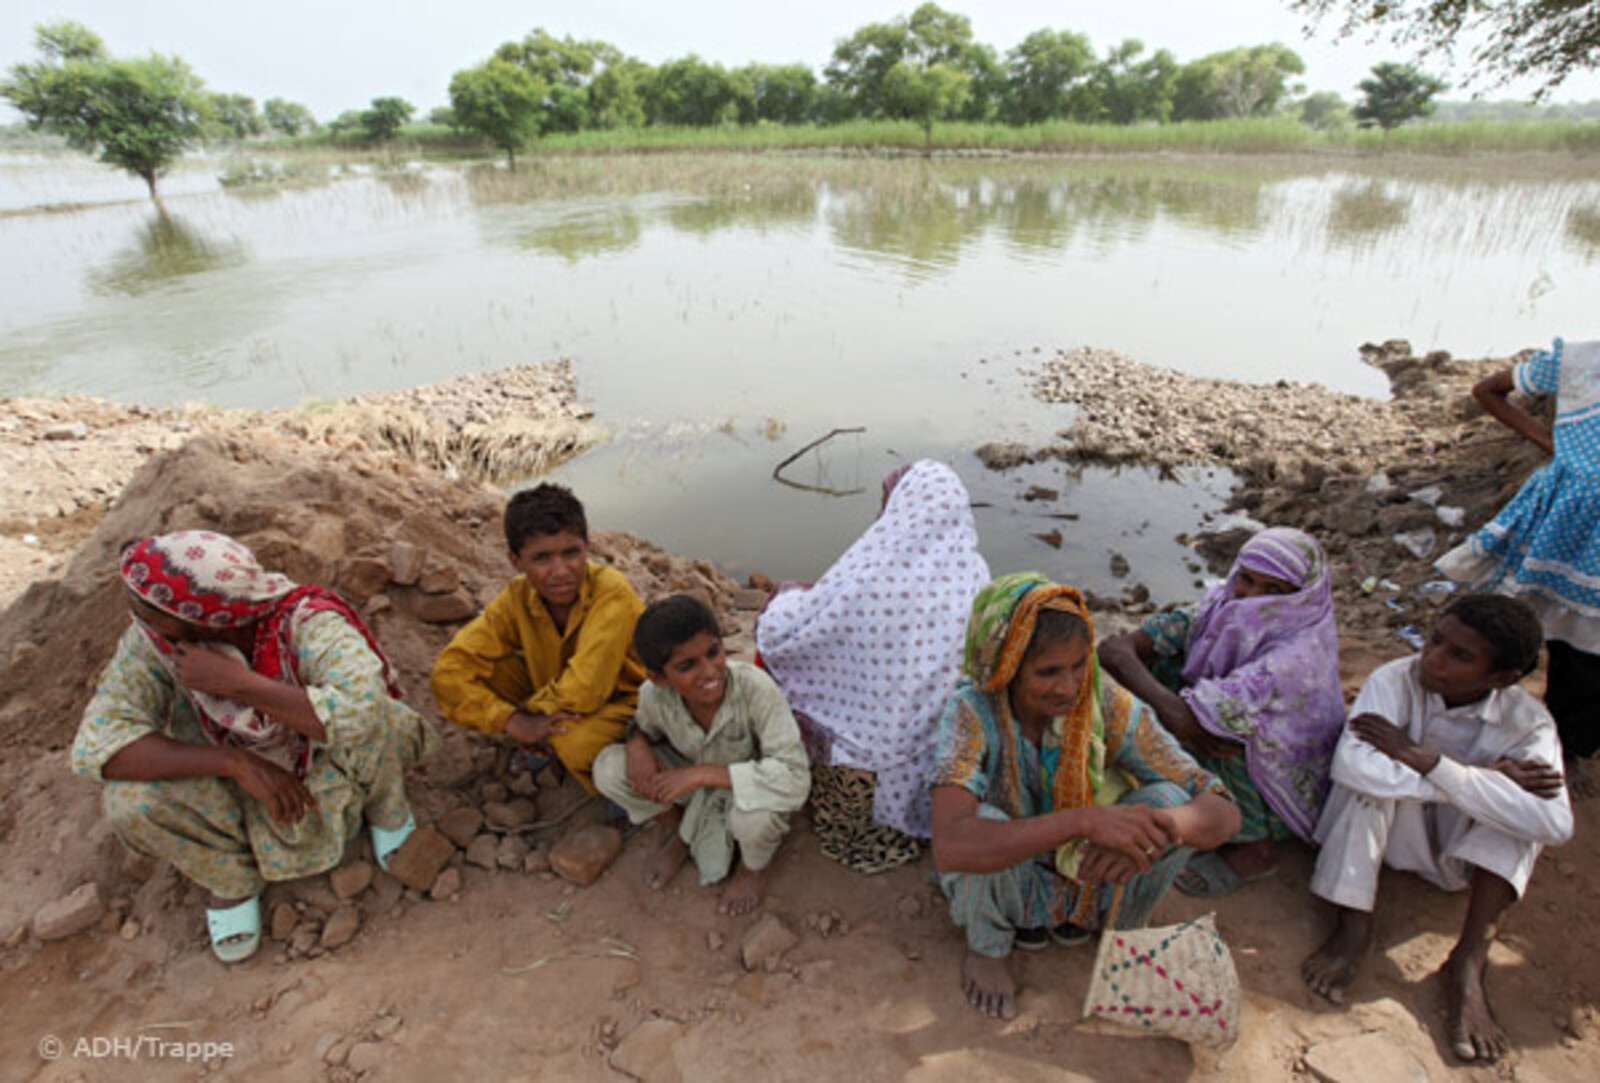 28.08.2010, Pakistan, Punjab Muzaffargarh- Hochwasser Pakistan. Frauen und Kinder sitzen am Rande überfluteter Felder.